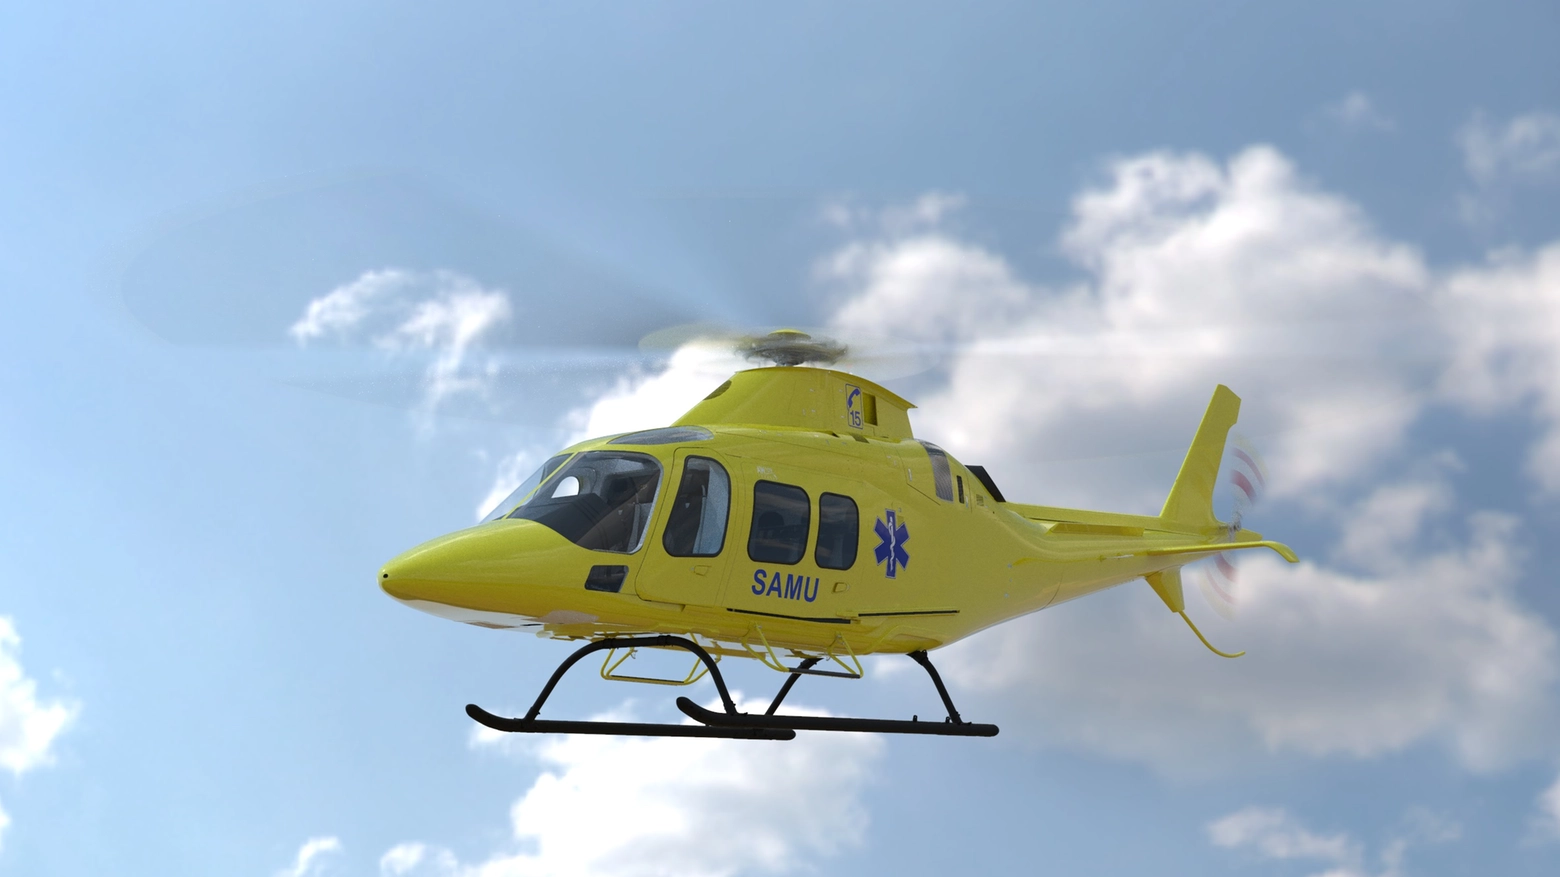 L'elicottero leggero bimotore è stato scelto da SAF Hélicoptère sper supportare le operazioni di servizio sanitario d’emergenza